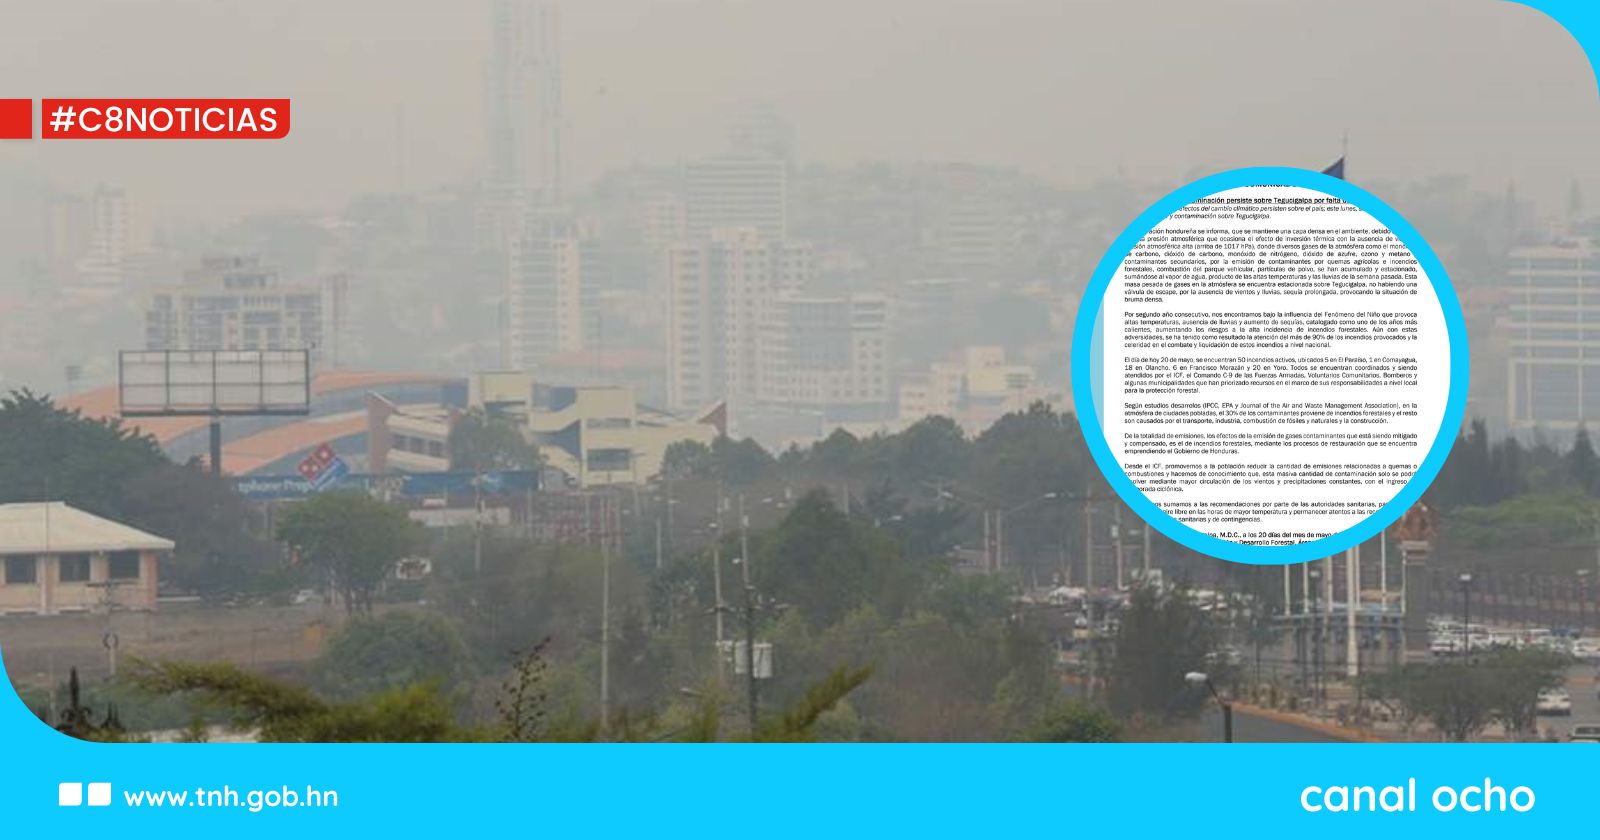 ICF: persistente capa de vapor y contaminación por falta de vientos y lluvias en Tegucigalpa